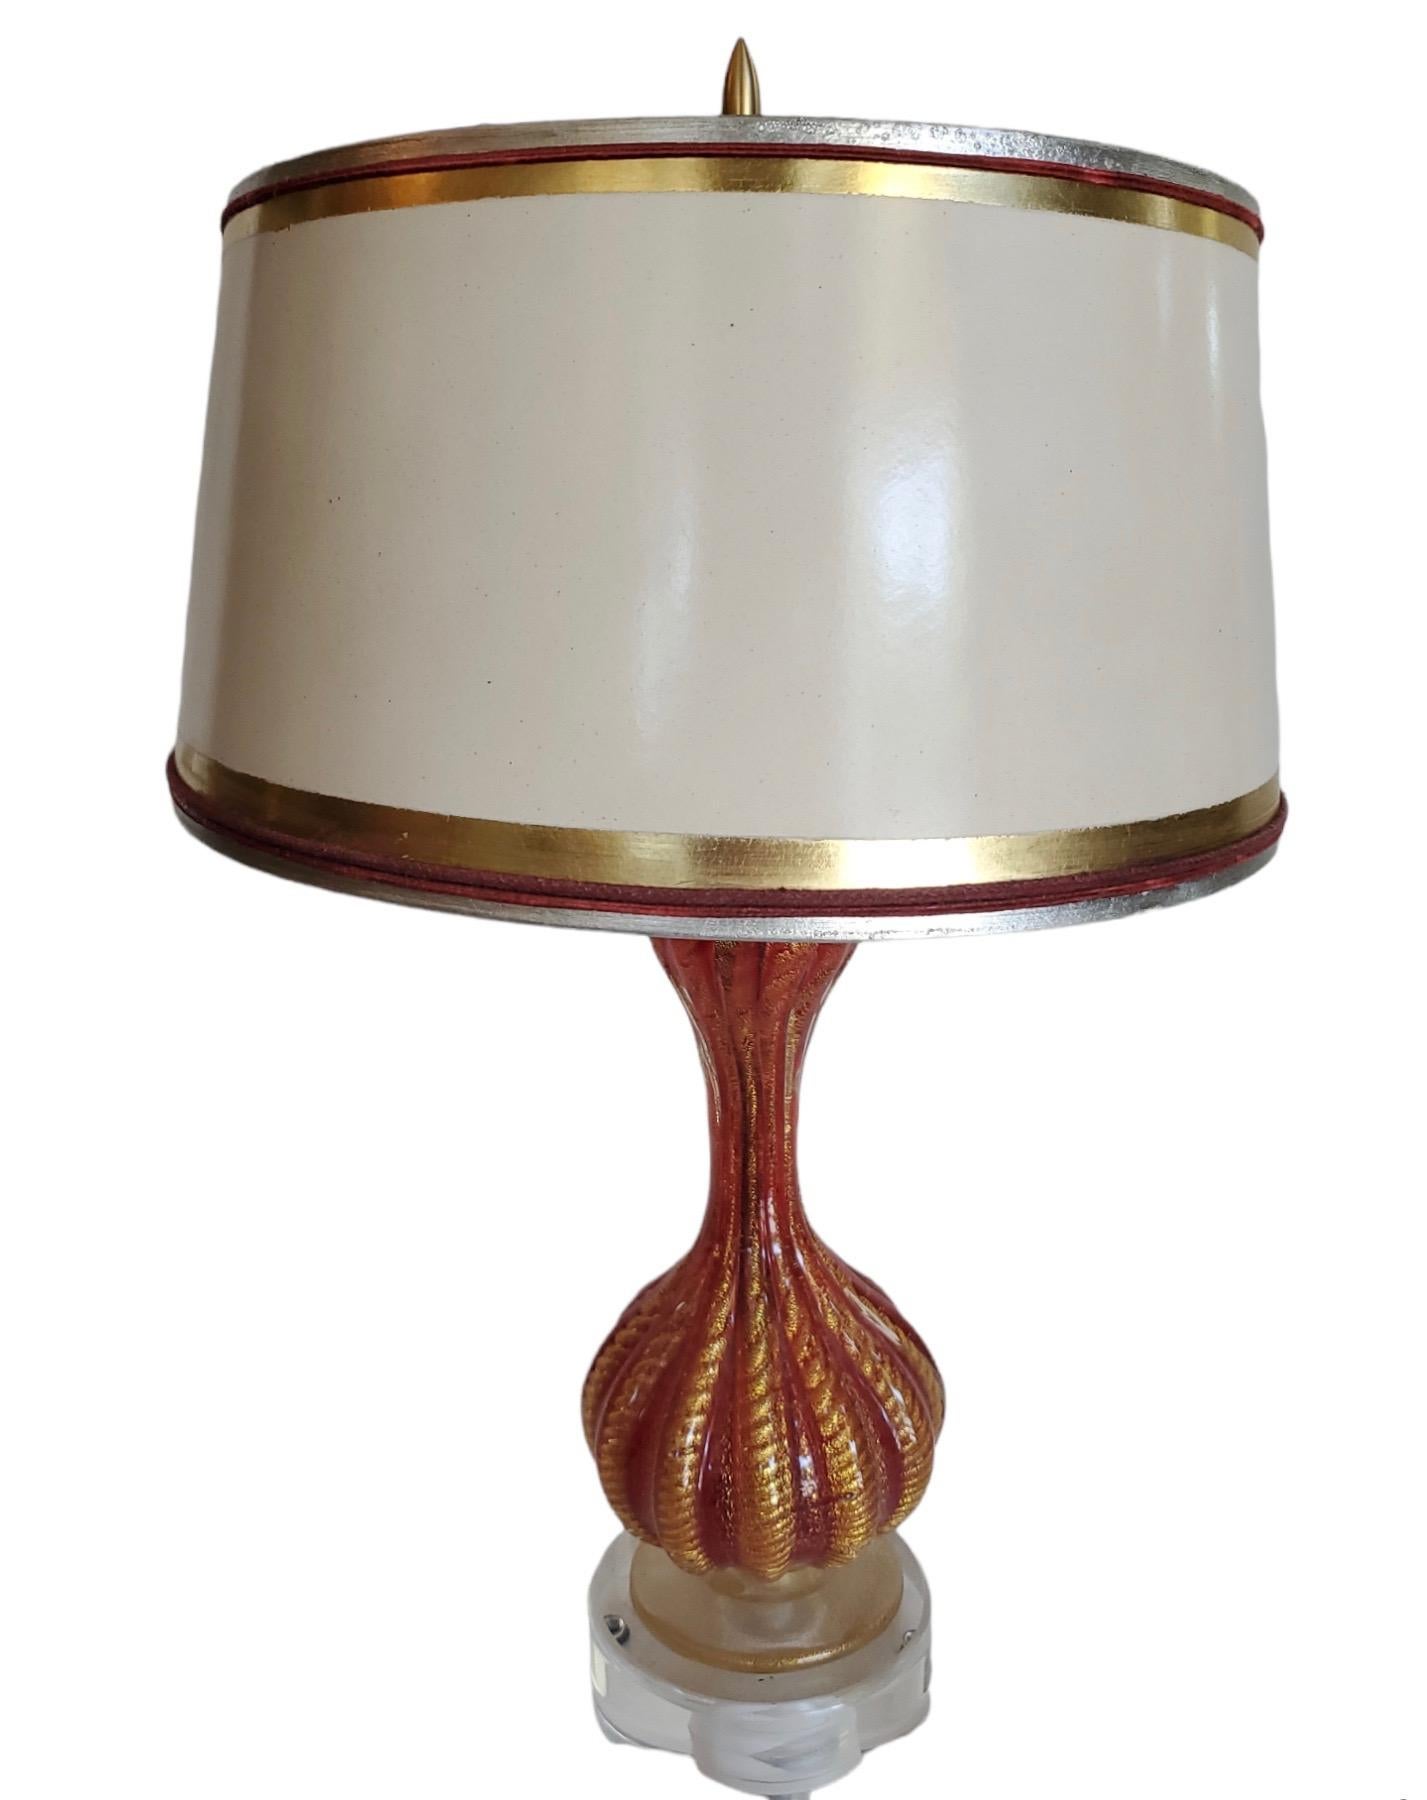 MId-Century Modern lampe Murano. Belle couleur rouge avec de fortes quantités d'or partout. L'abat-jour en parchemin personnalisé mesure 6,5